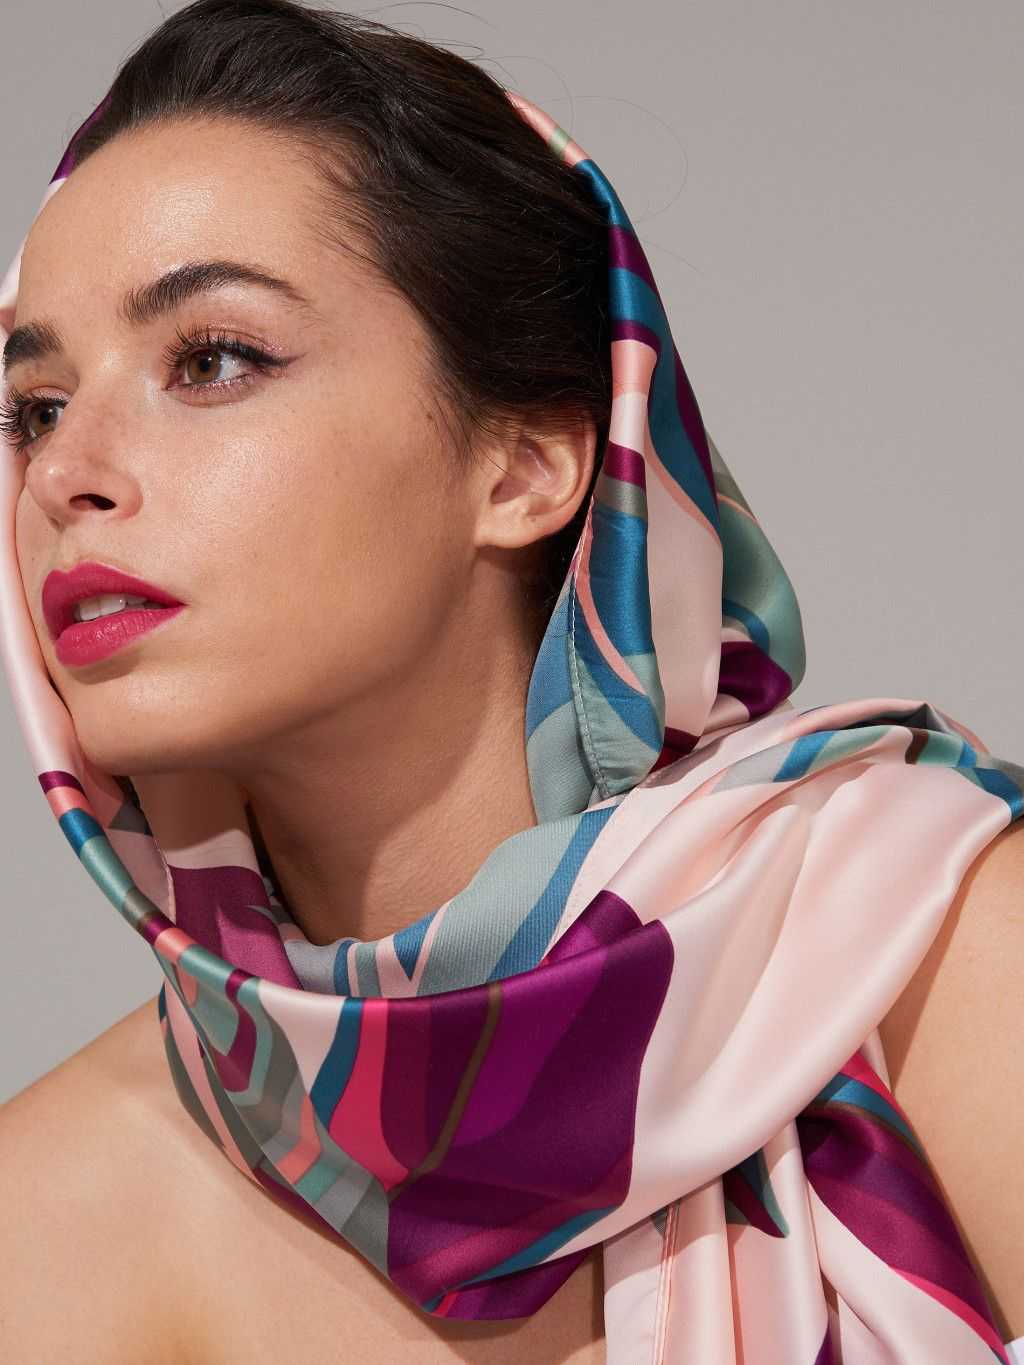 Женские шарфы осень-зима 2021-2022 | стильные фасоны, модные расцветки, фото луков